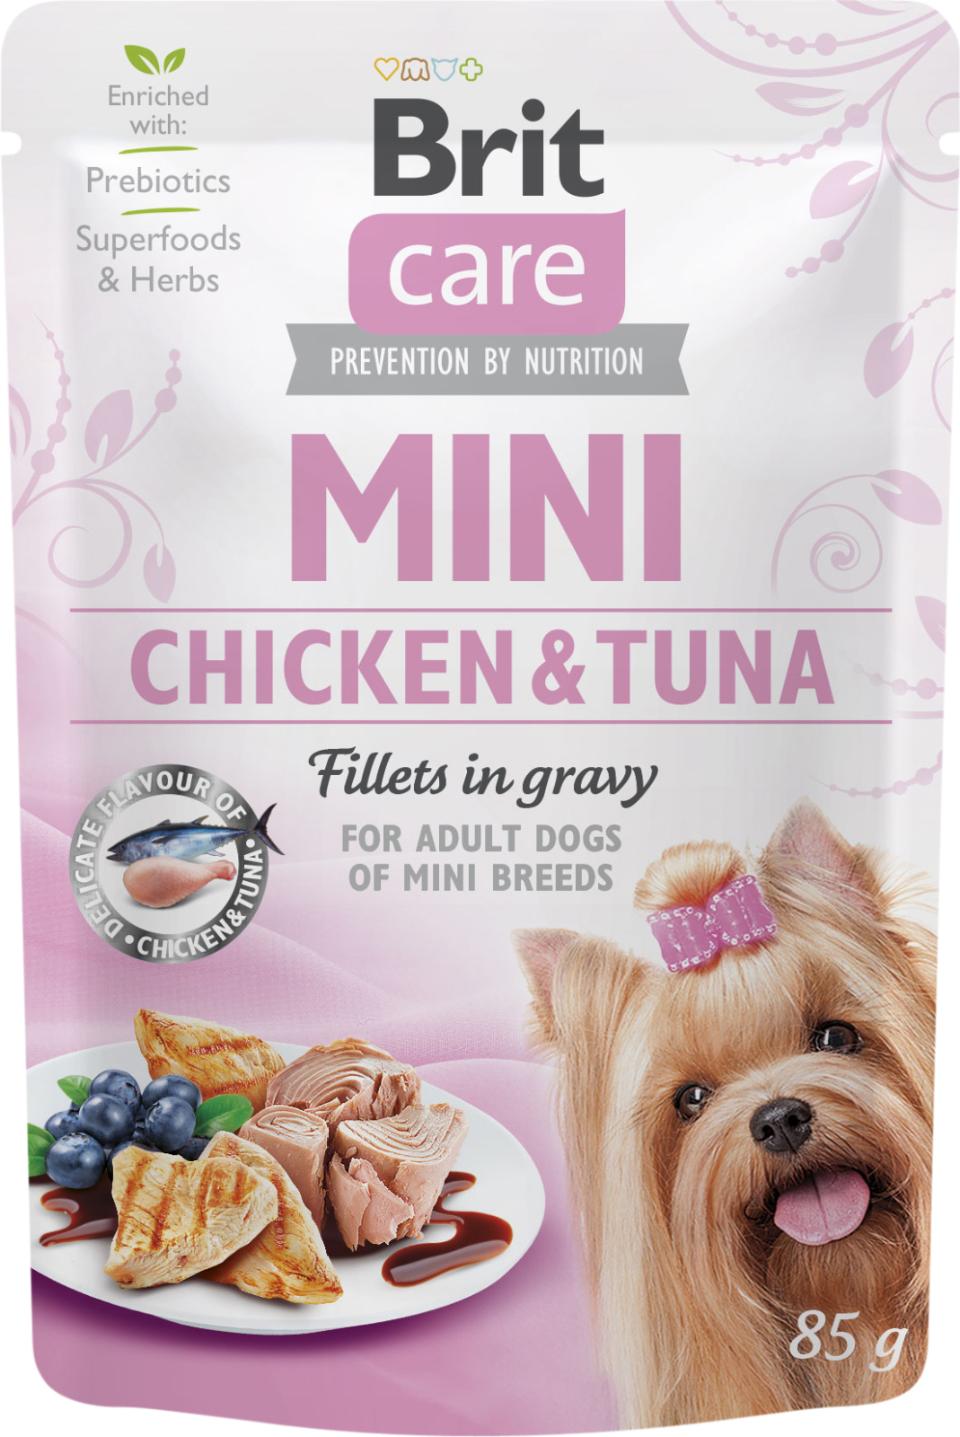 Billede af Eldorado - Brit Care Mini Fileter i sovs - Kylling + tun 85g - Dog Food